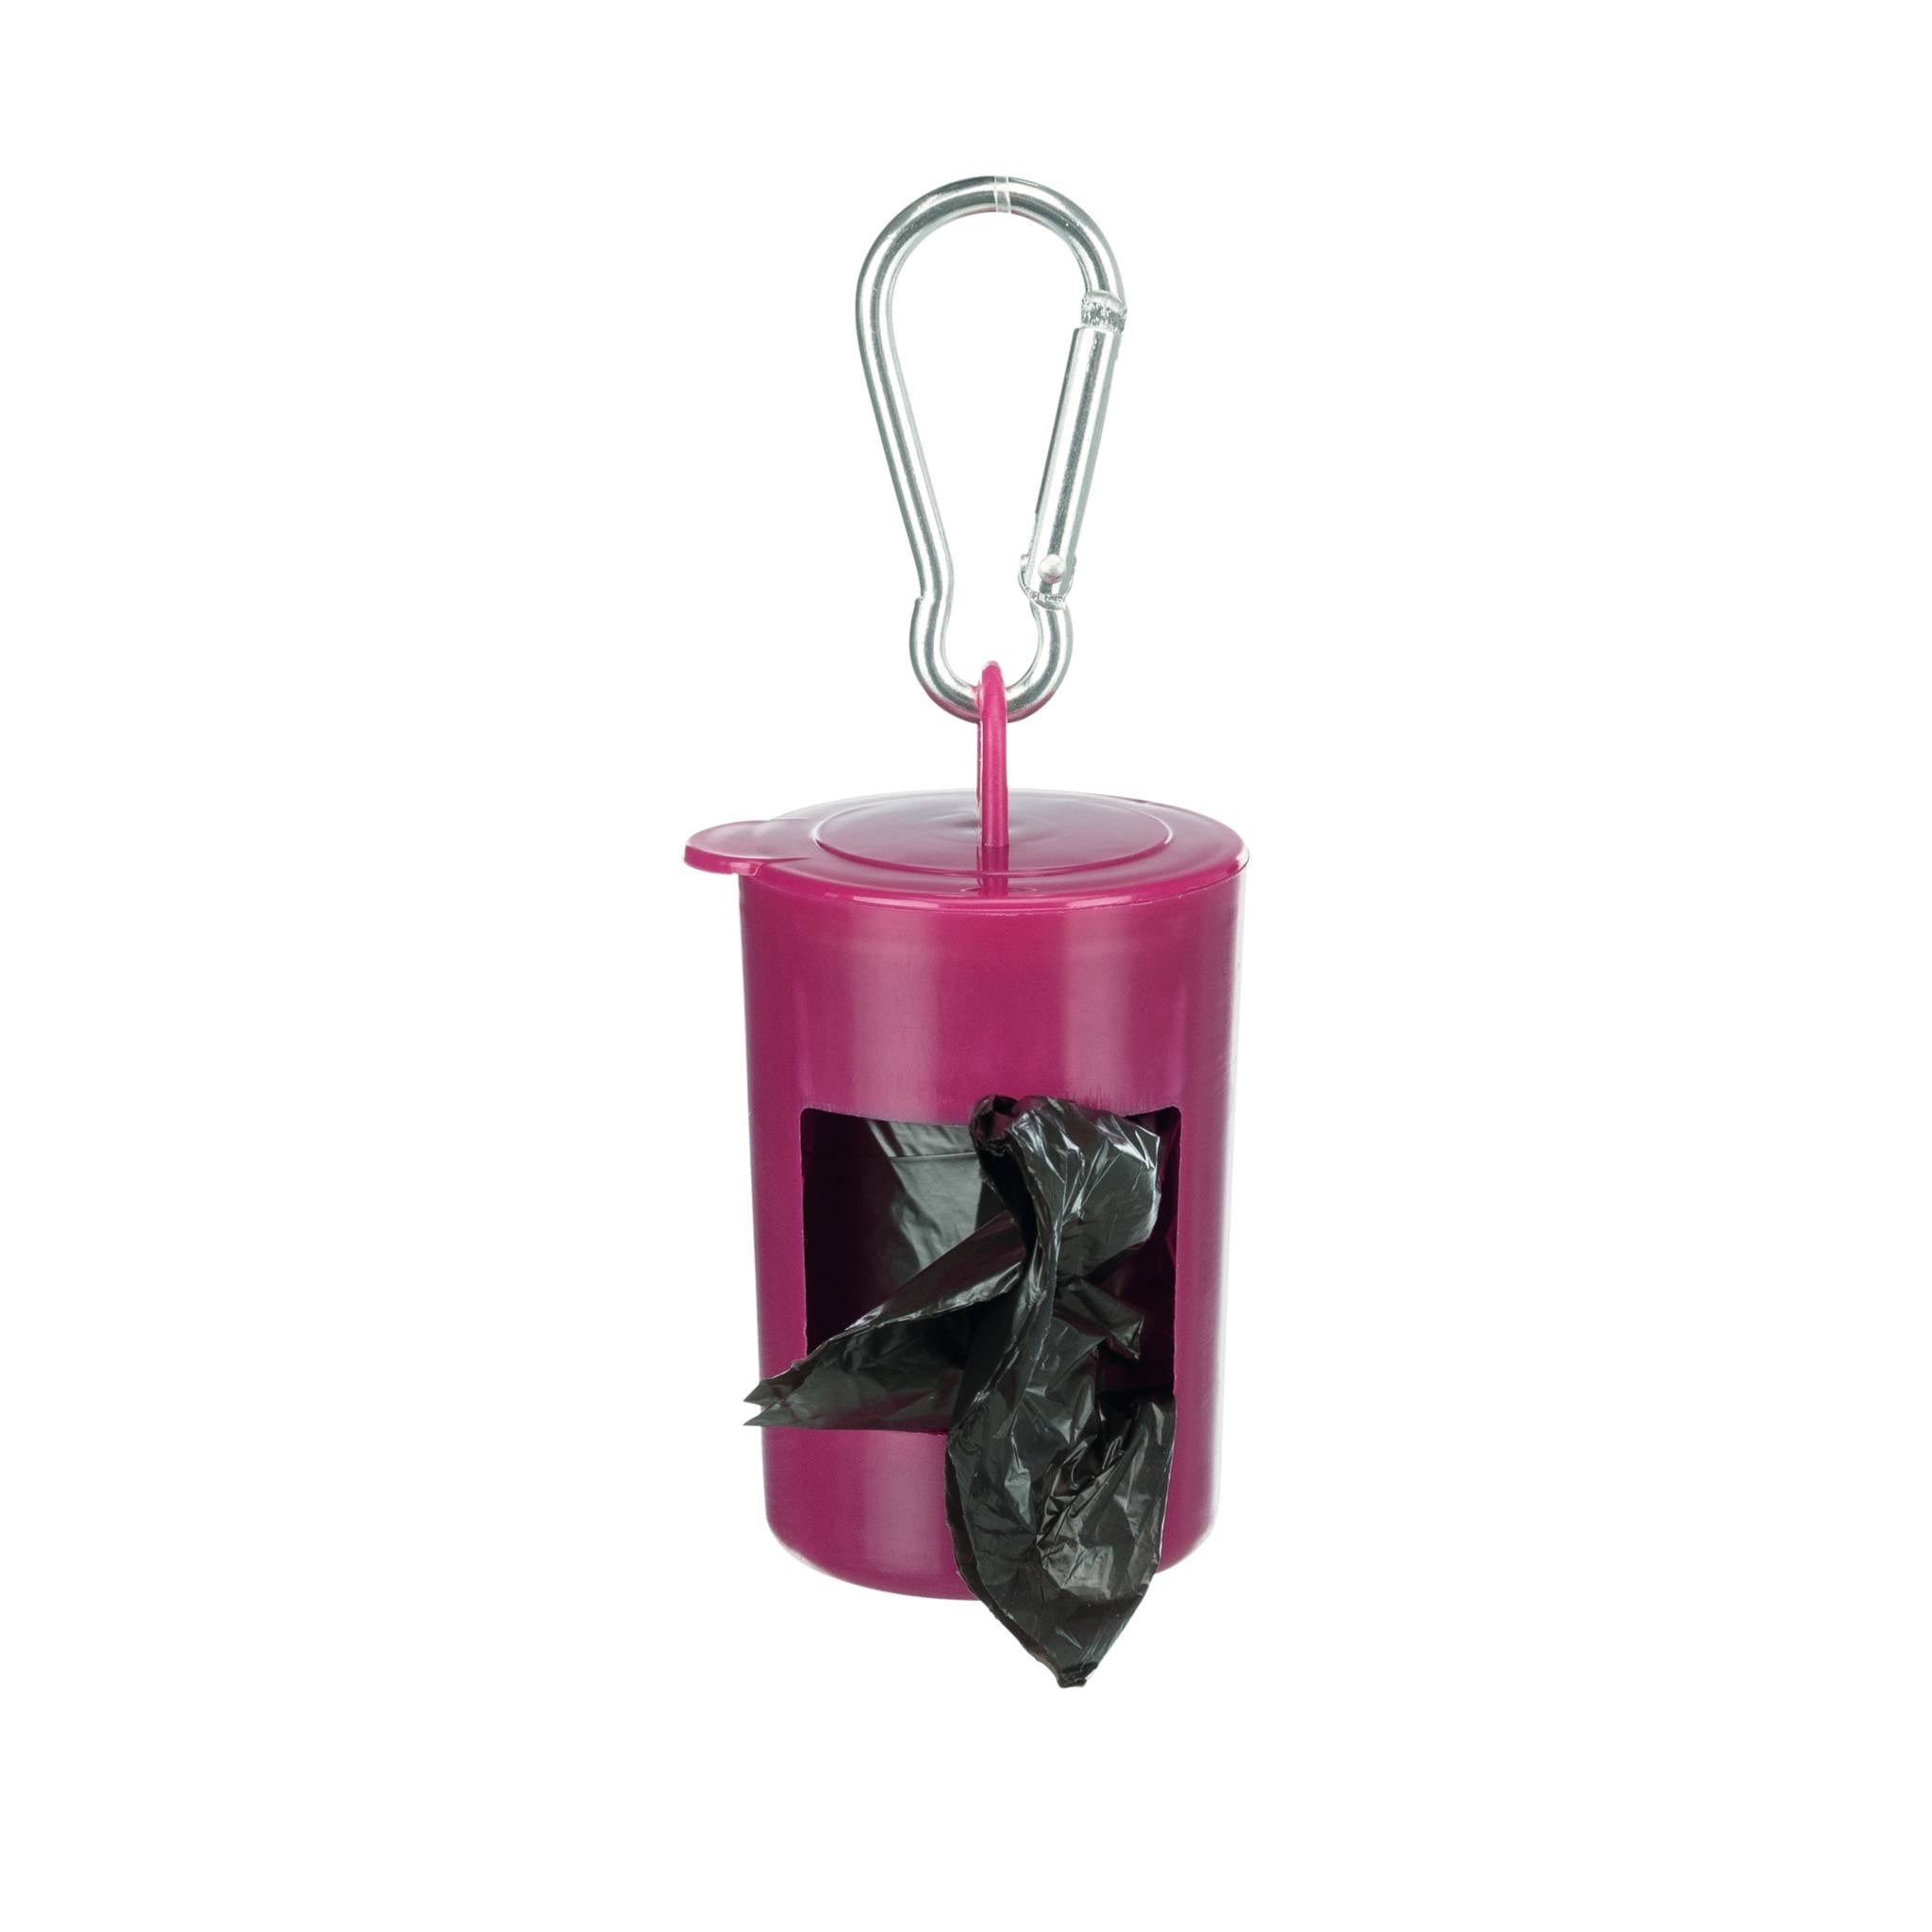 Trixie Poop Bag Dispenser with Karabiner- Pack of 6